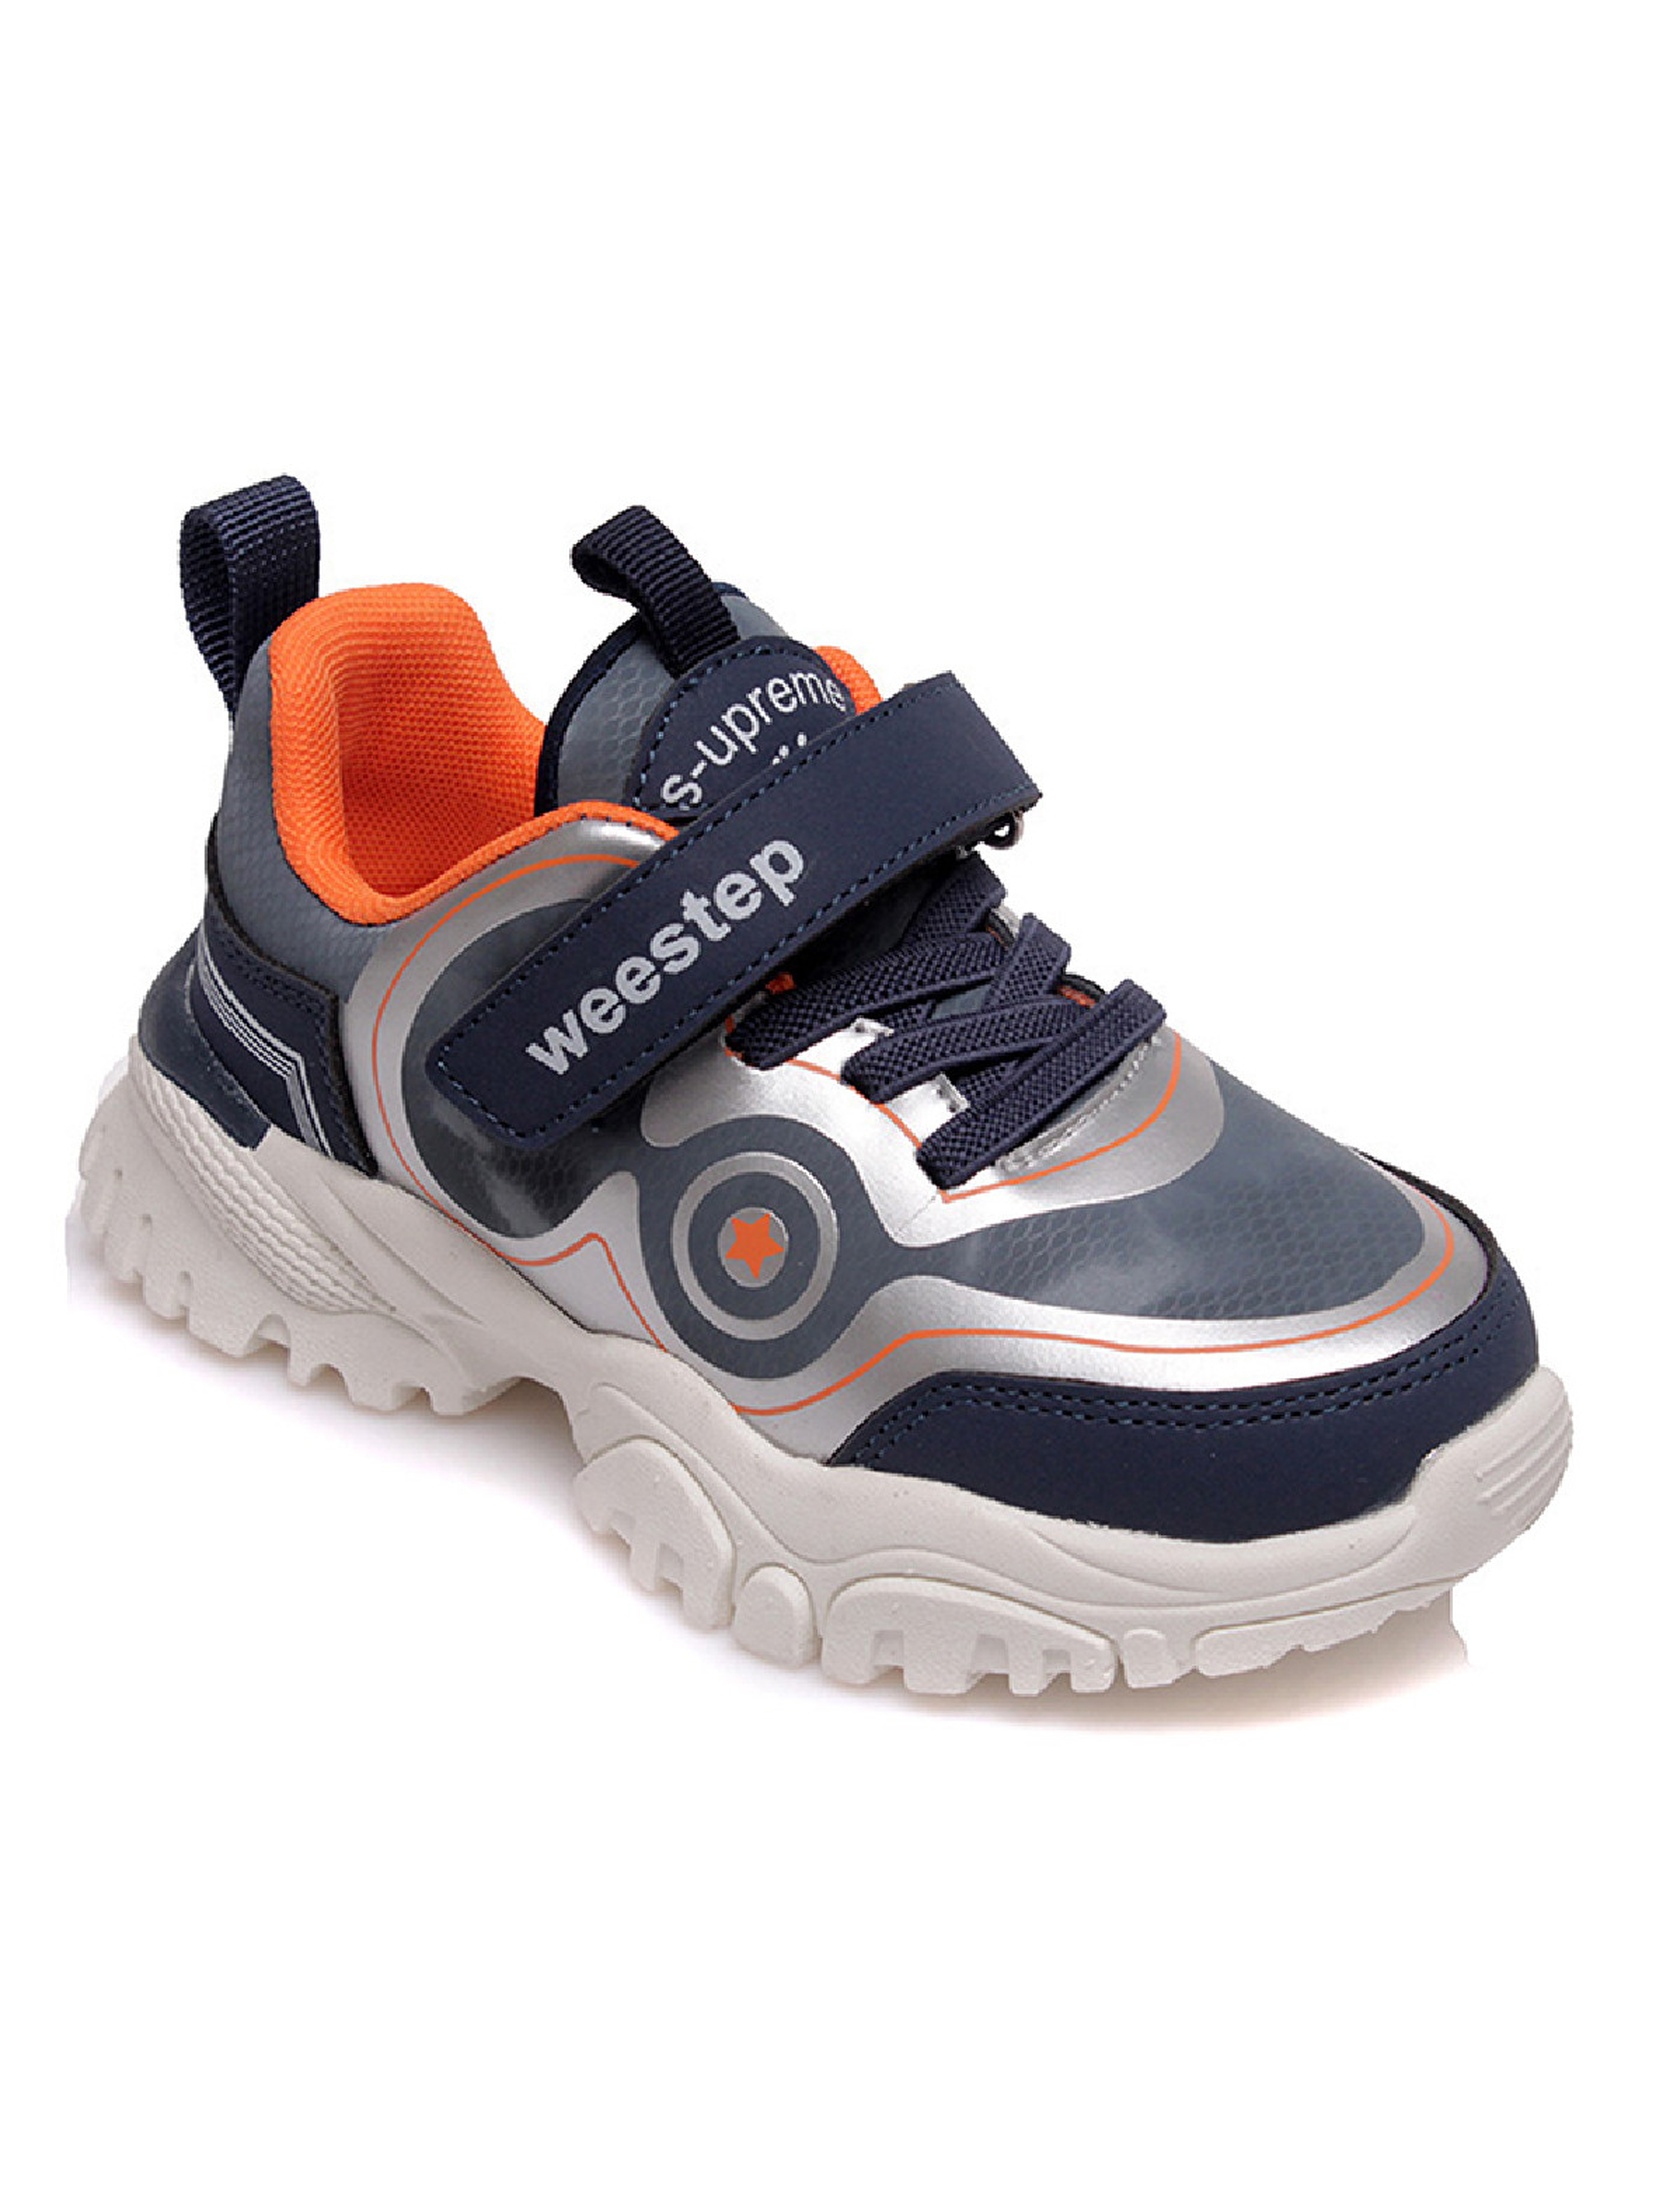 Sportowe buty dla chłopca niebieskio-szare Weestep